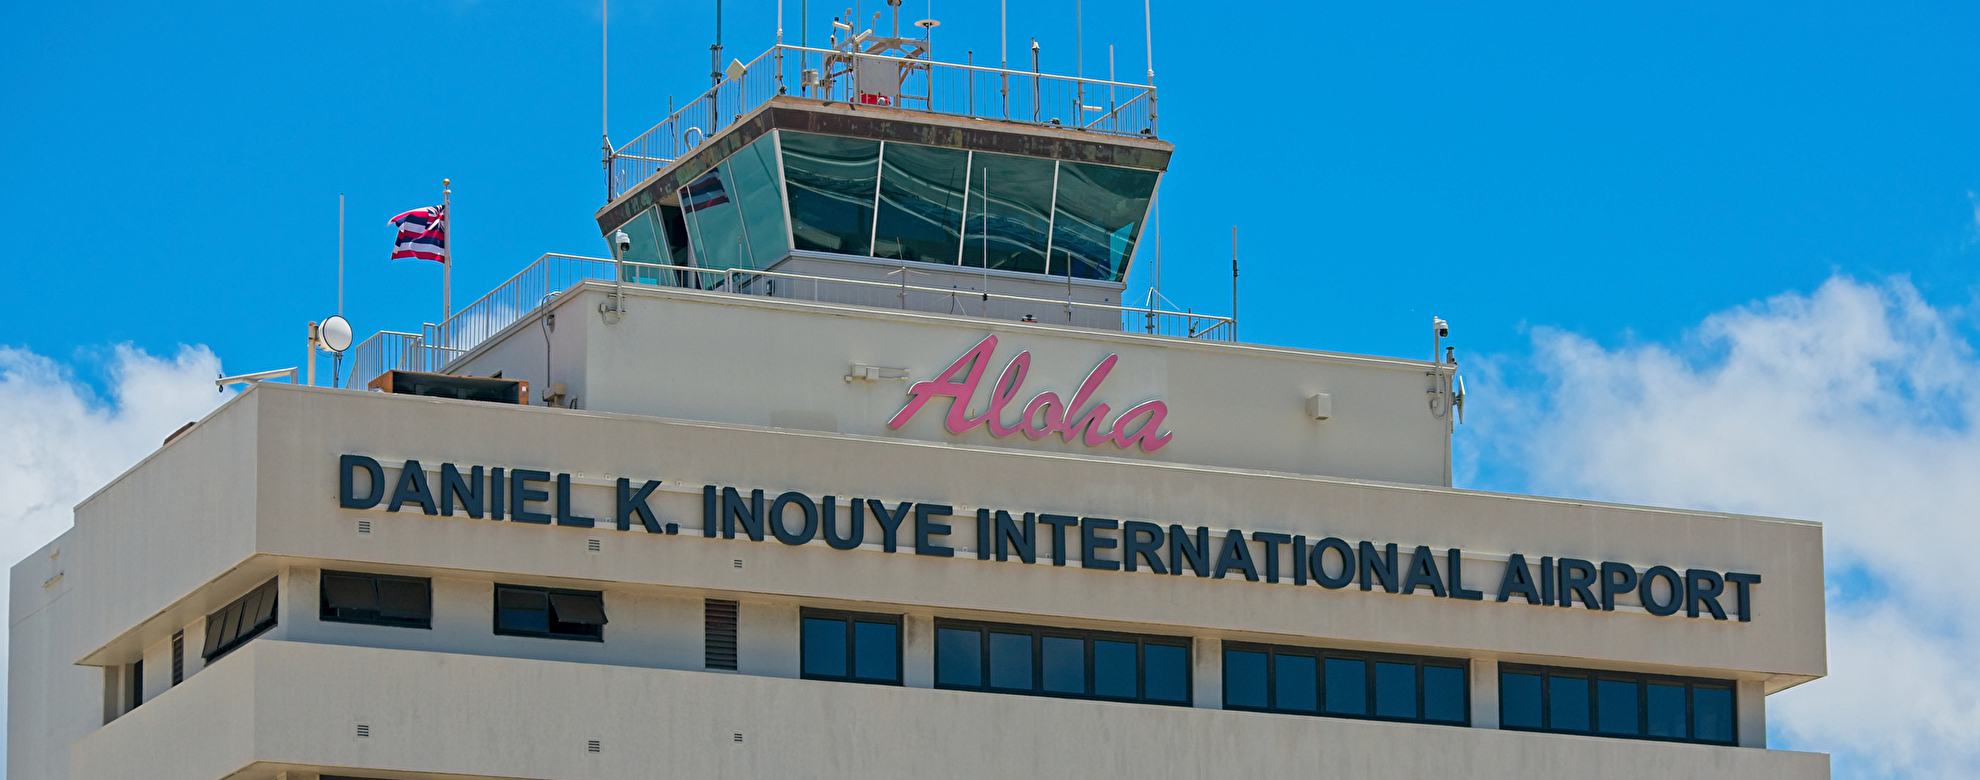 ダニエル・K・イノウエ国際空港ガイド 乗り継ぎ方法・就航都市・待ち時間の過ごし方